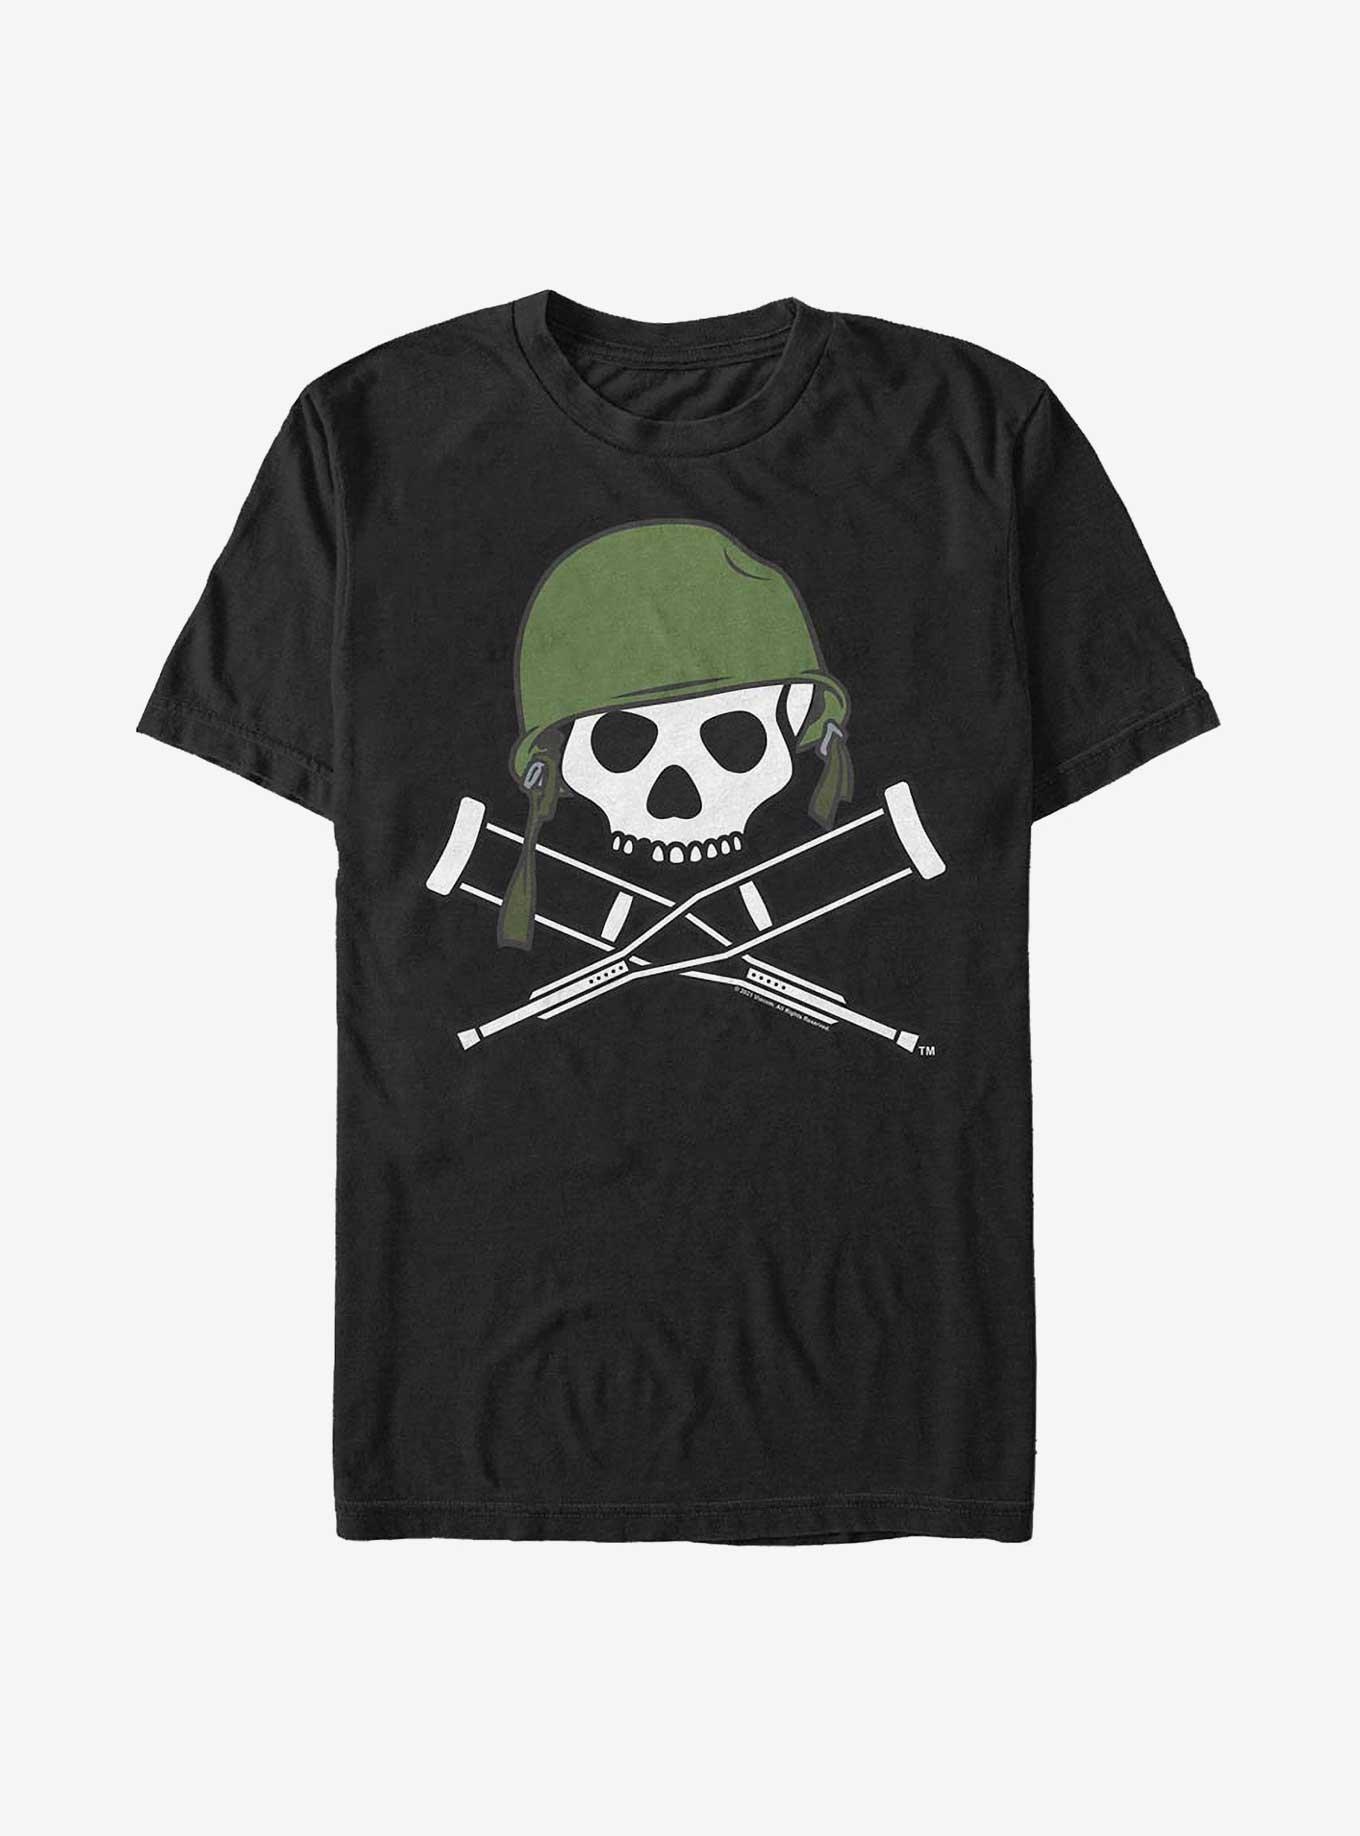 Jackass Forever Military Logo T-Shirt